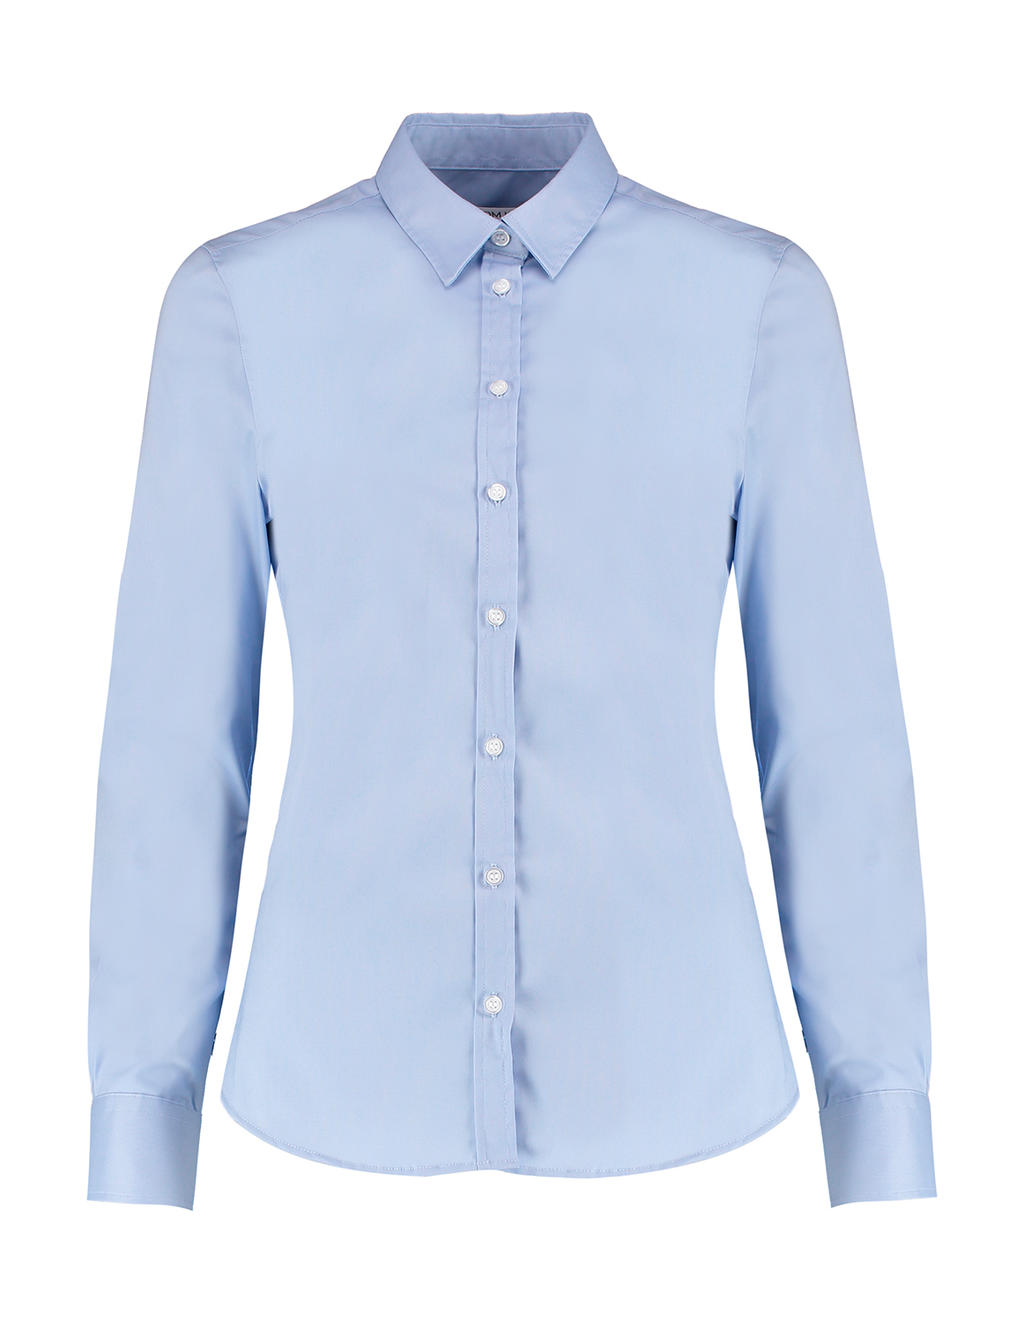 Dámska košeľa s dlhými rukávmi Strech Oxford - light blue